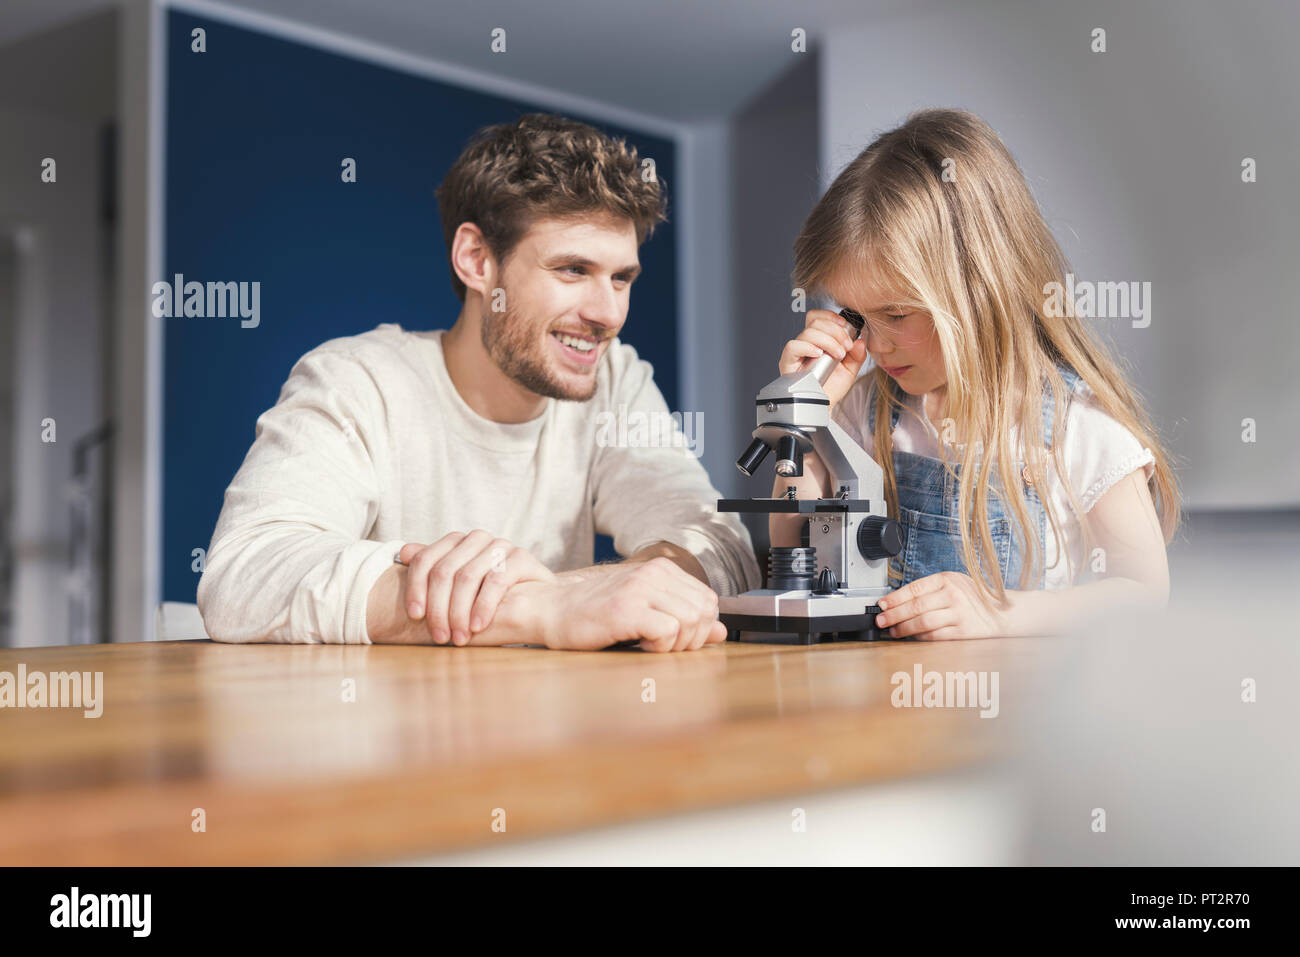 Père regardant fille utiliser un microscope, souriant fièrement Banque D'Images